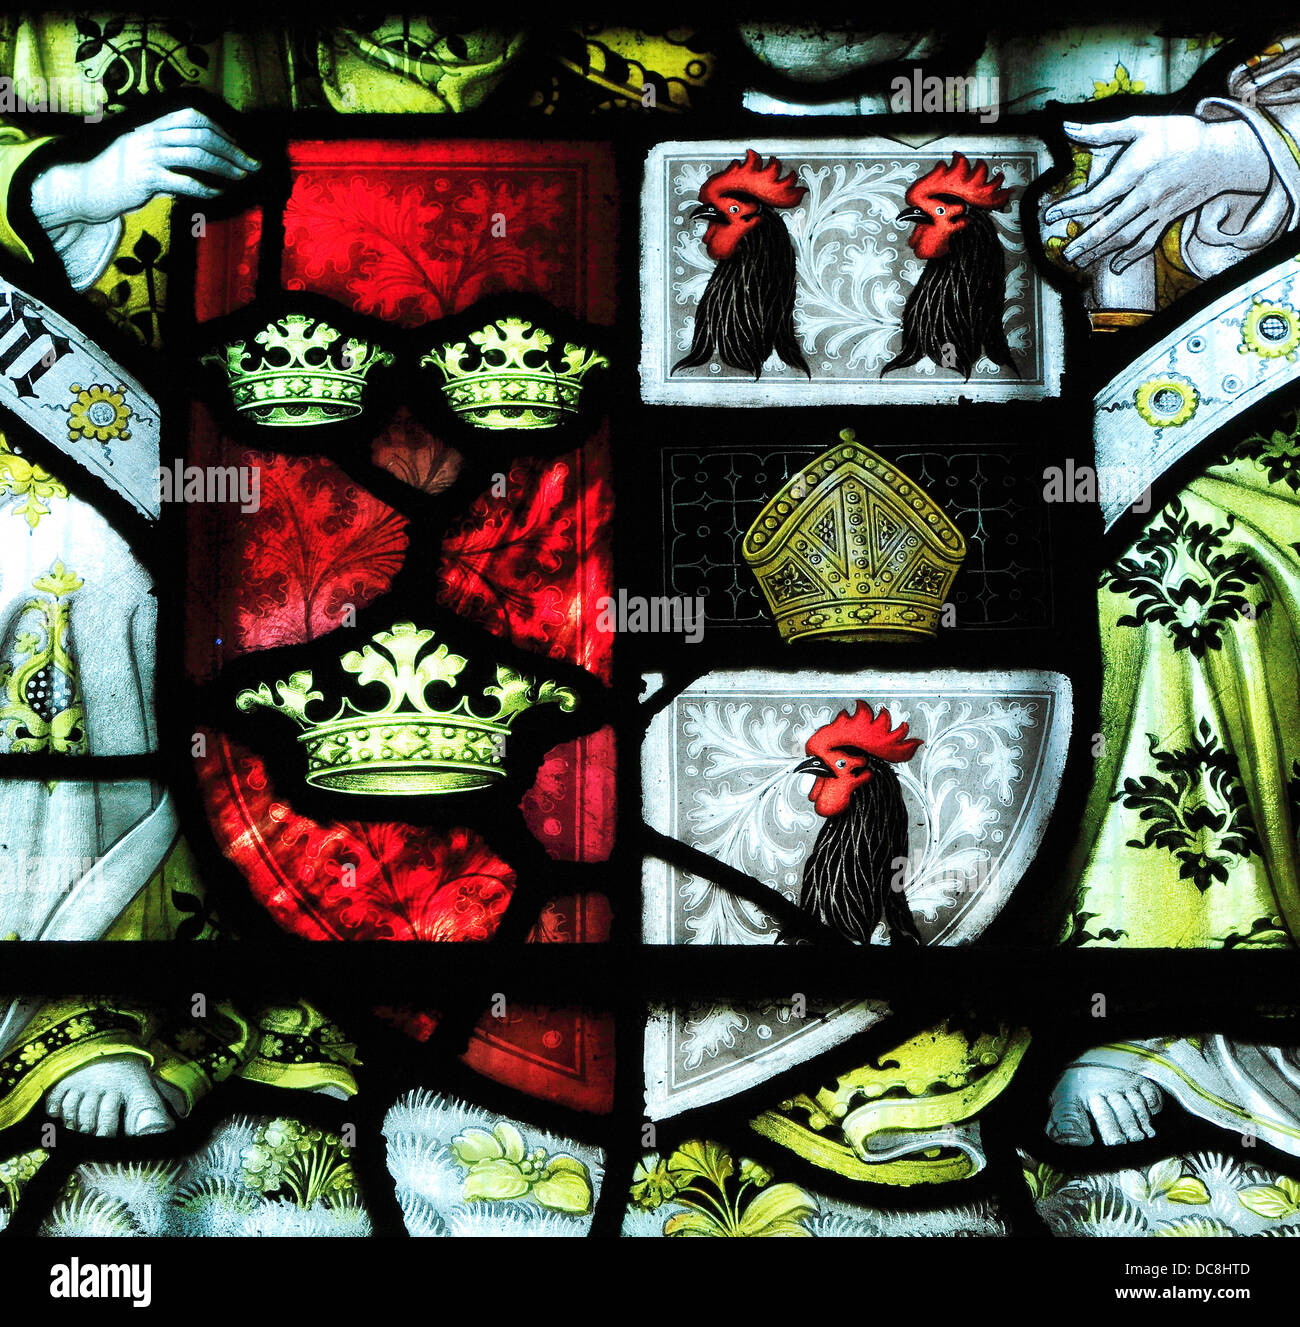 La catedral de Ely, los brazos del Obispo Alcock, vidriera, heráldica heráldica gallitos inglés obispos medievales Foto de stock